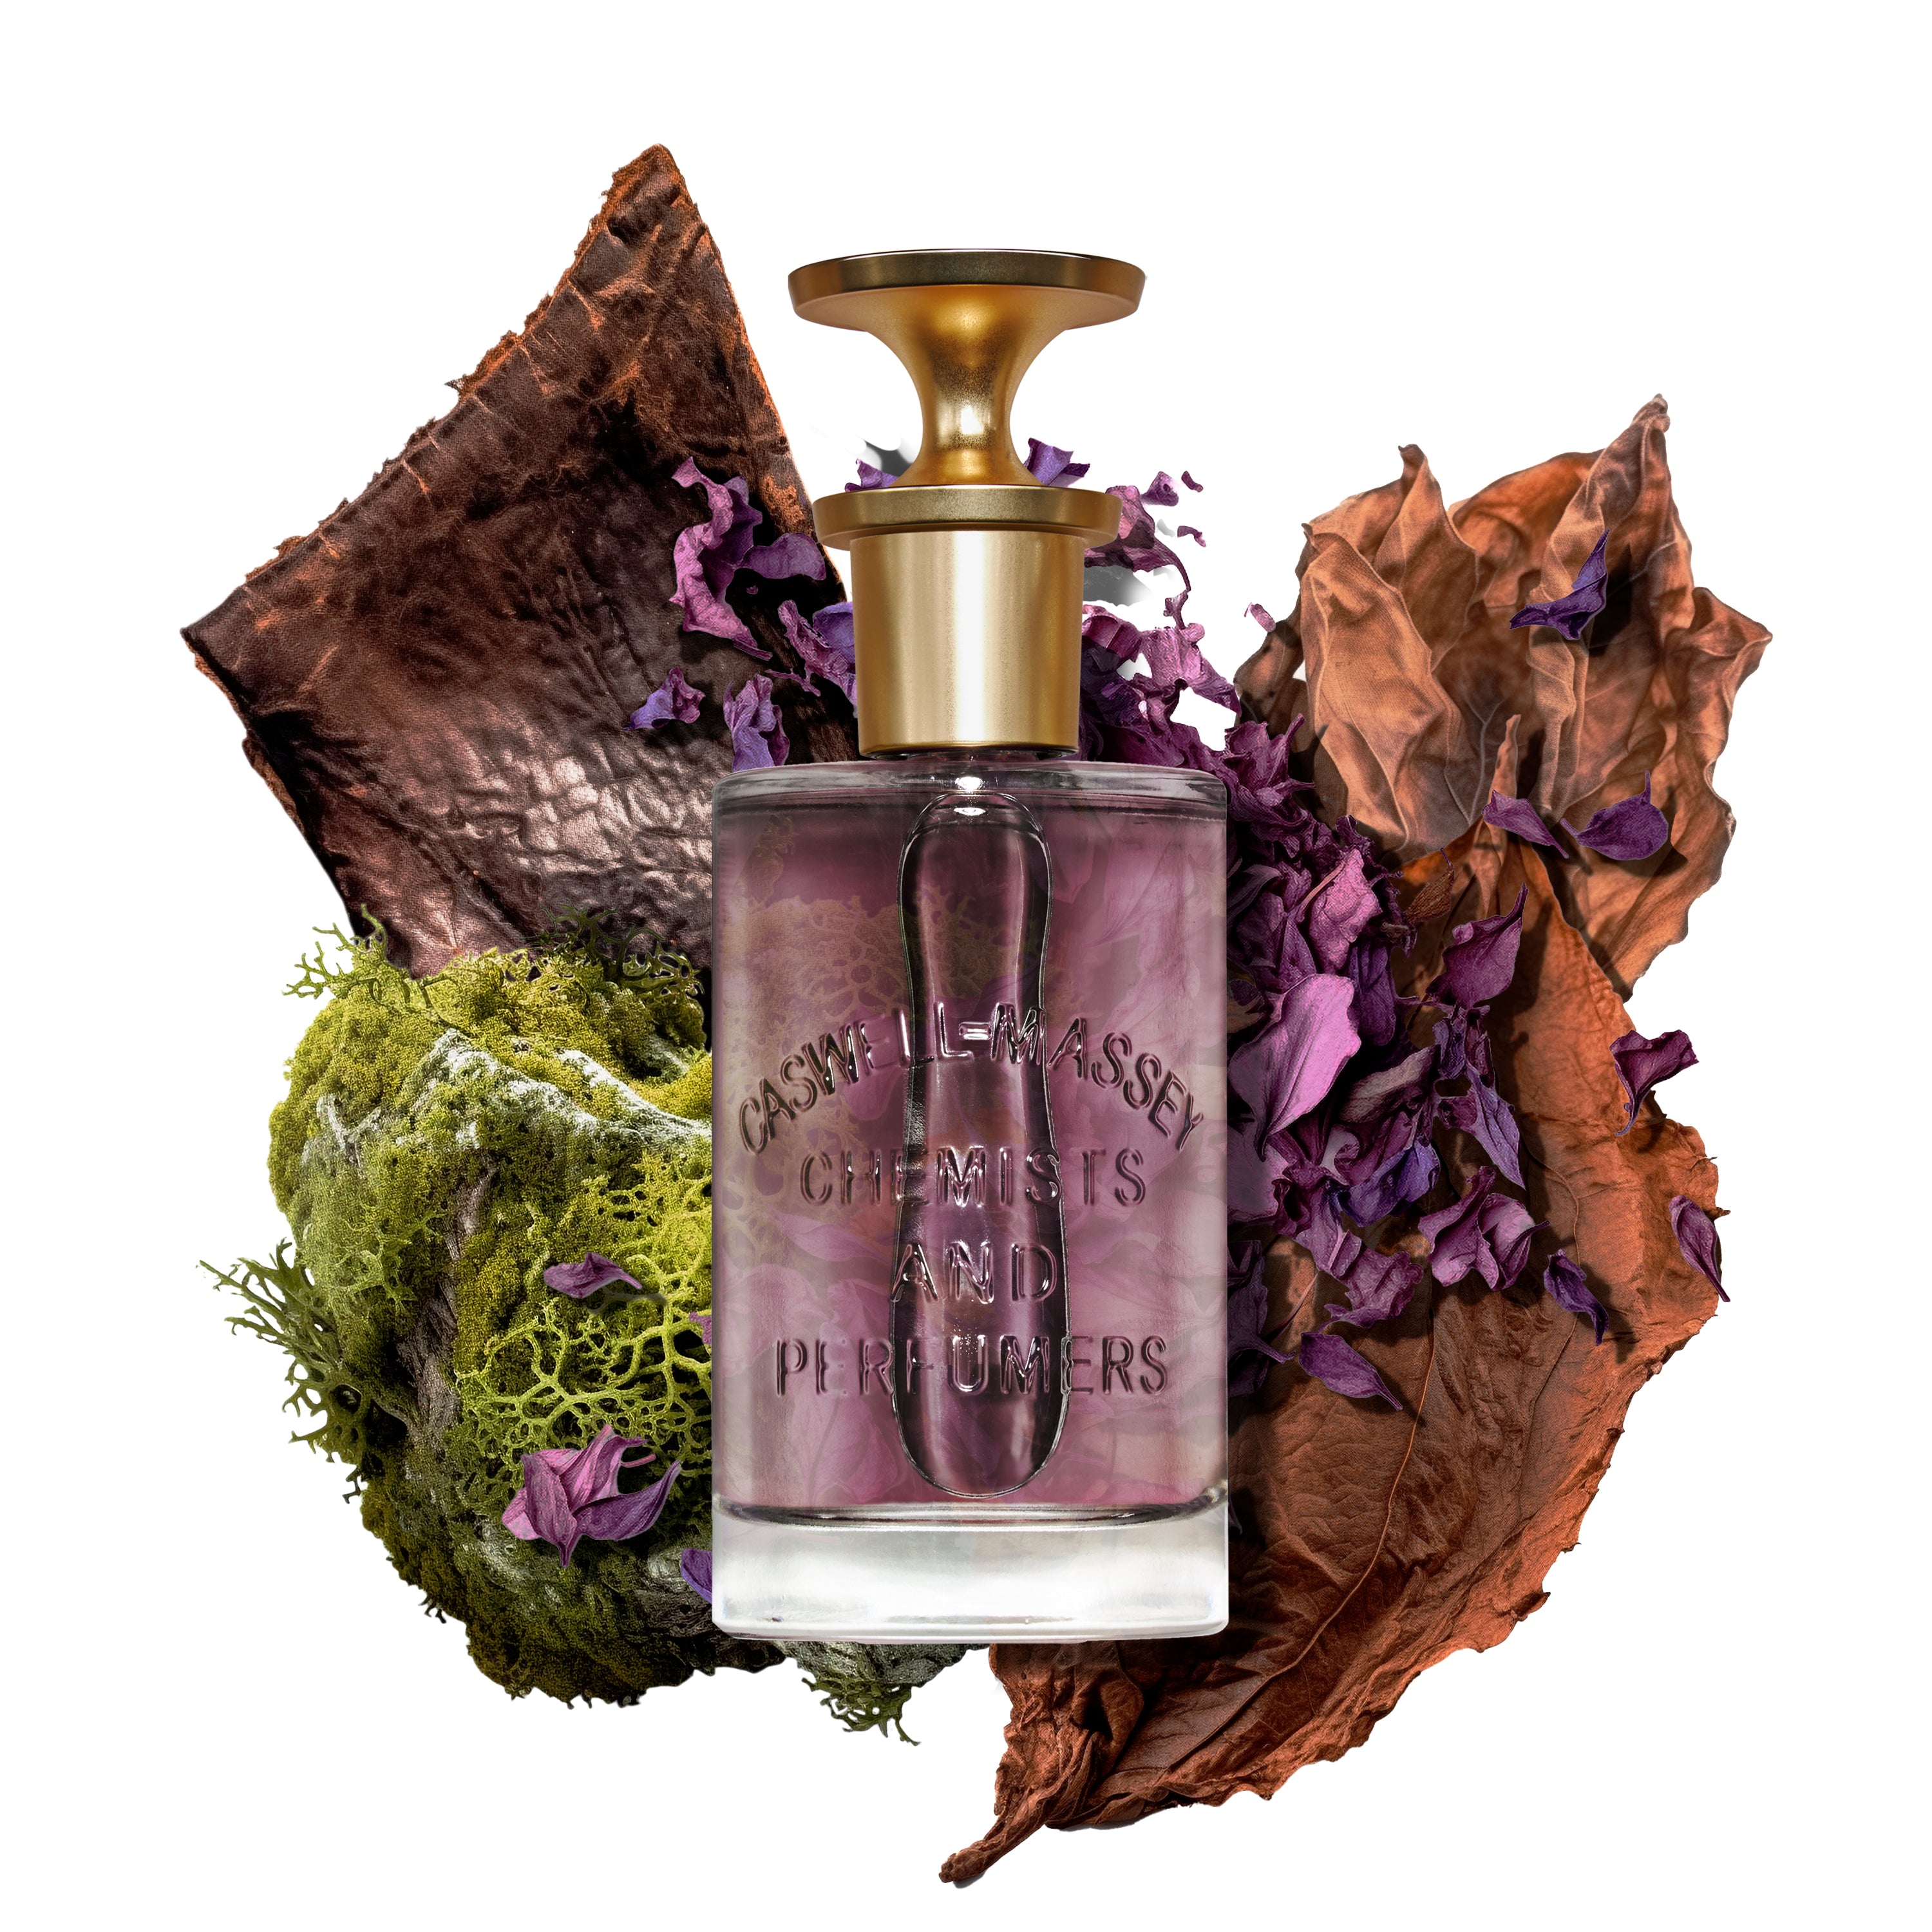 2571 Eau de Parfum, Fine Fragrance